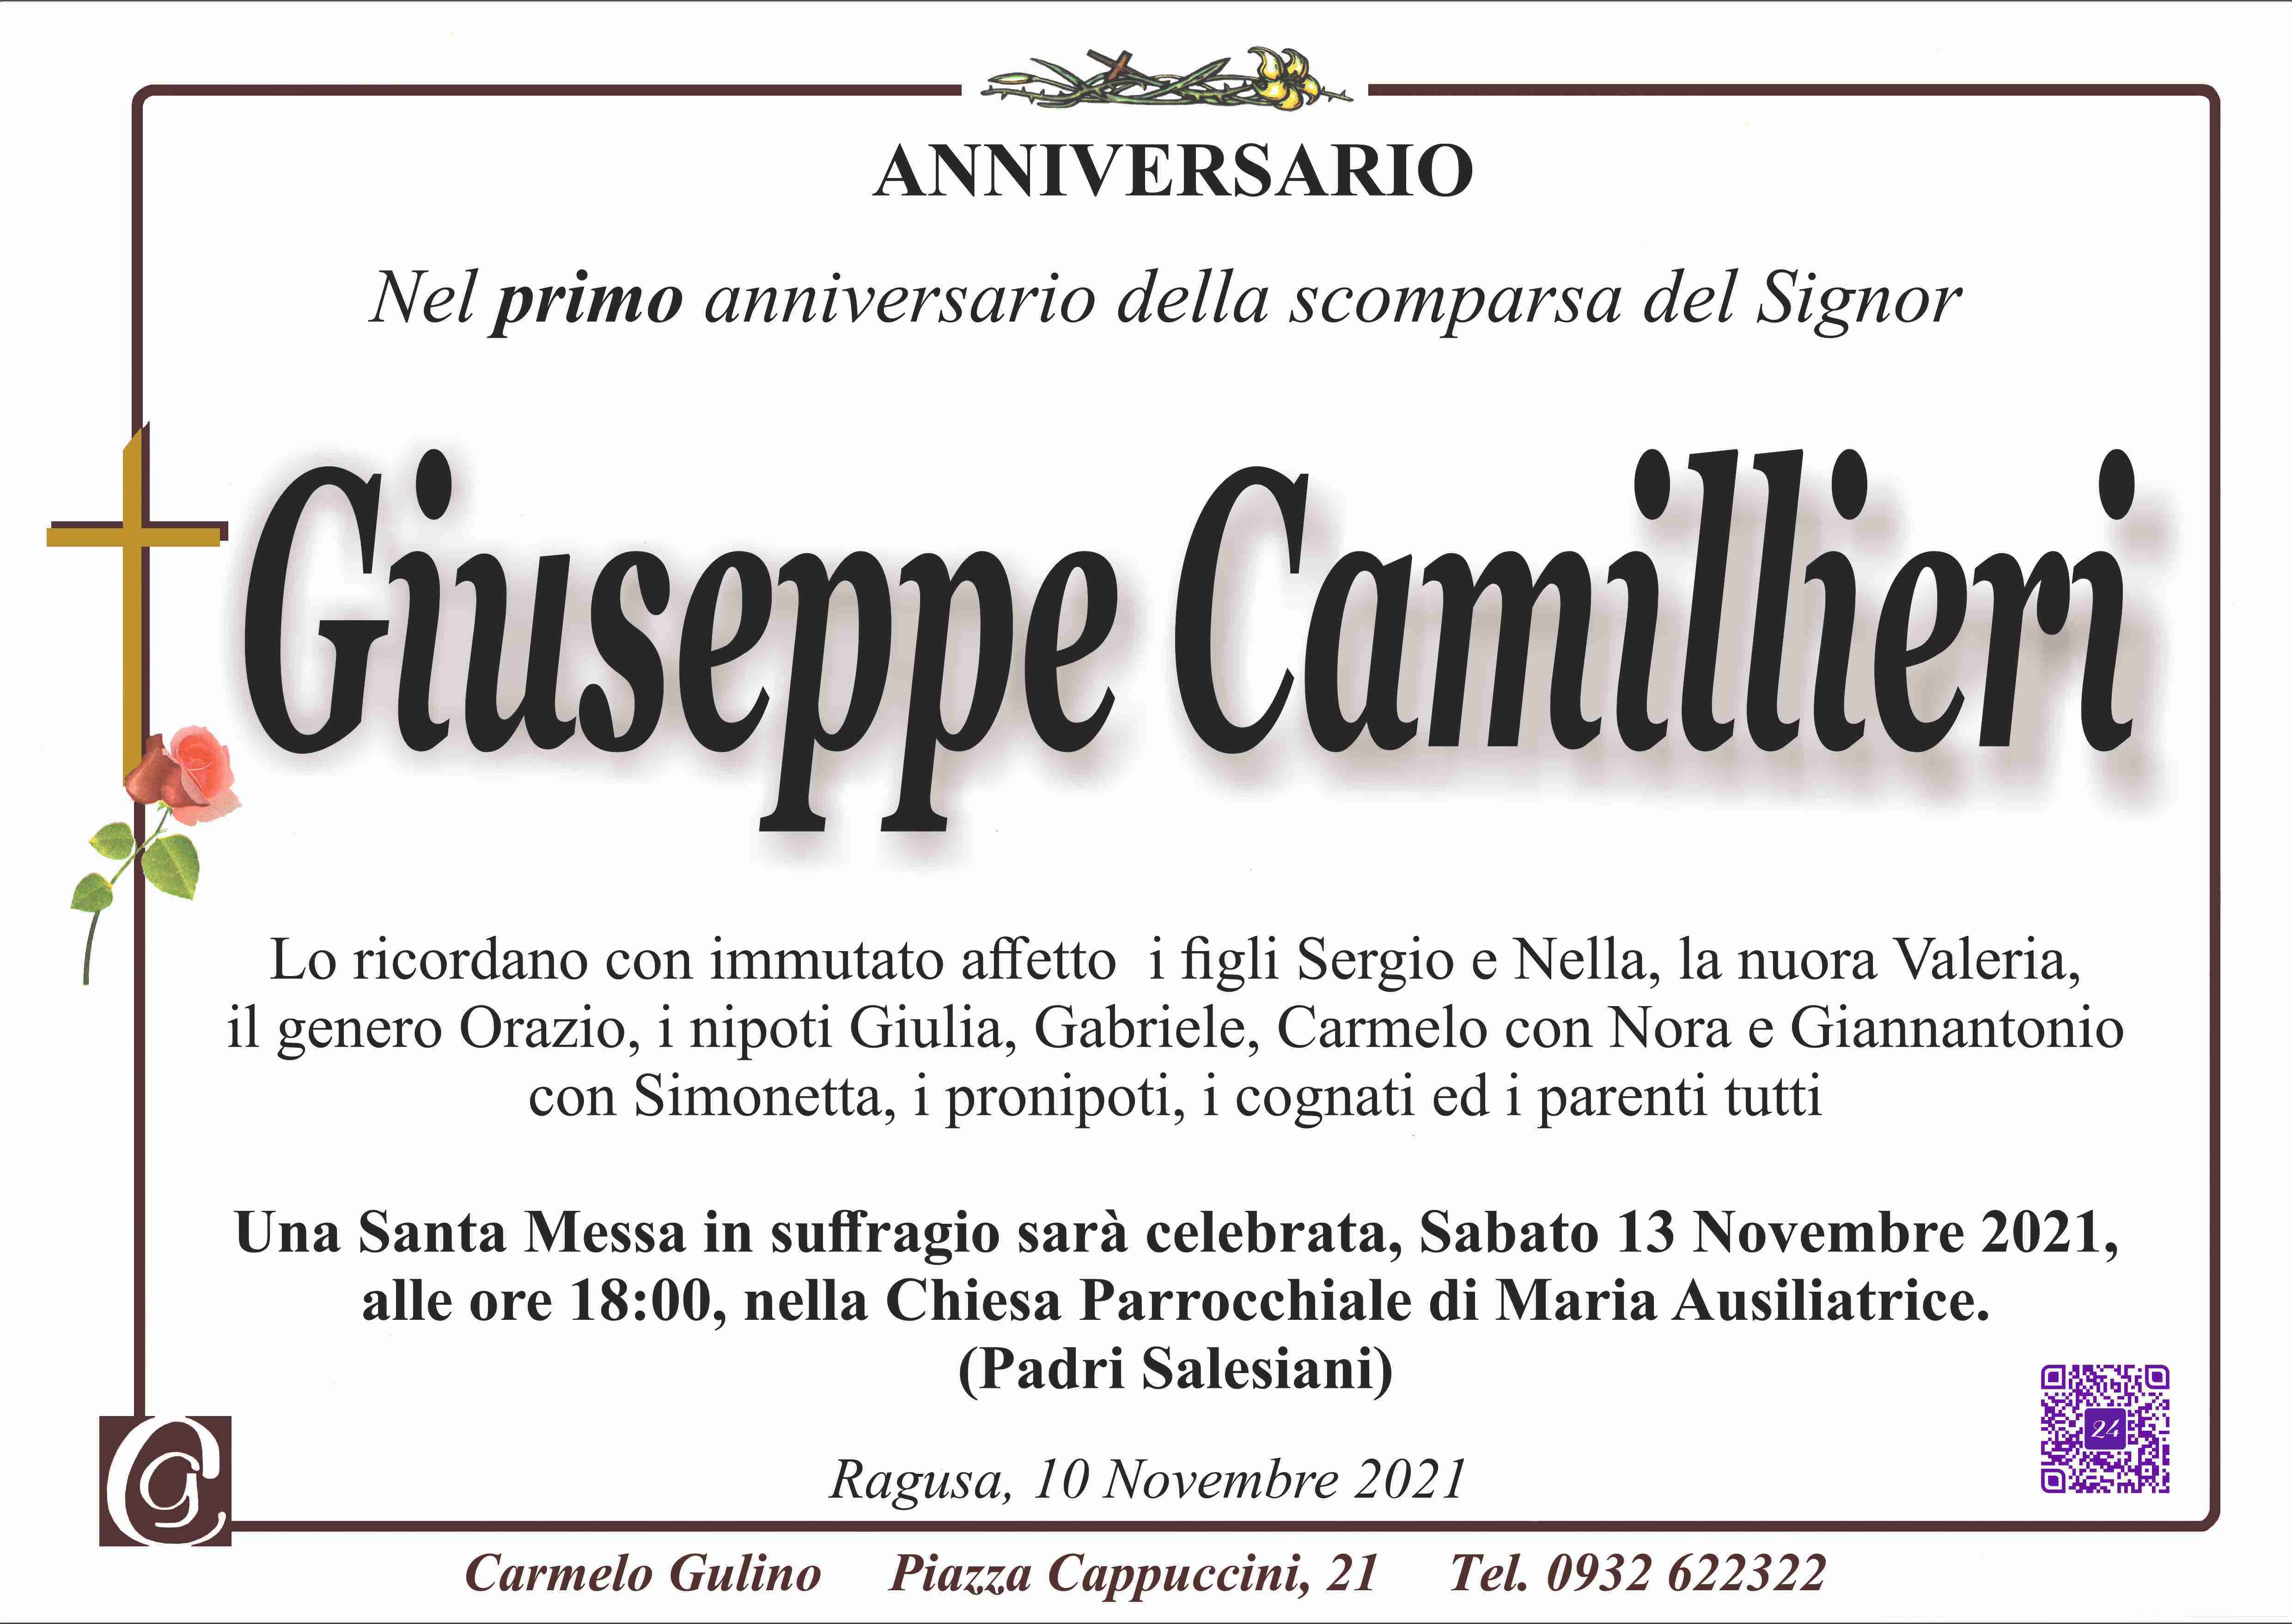 Giuseppe Camillieri